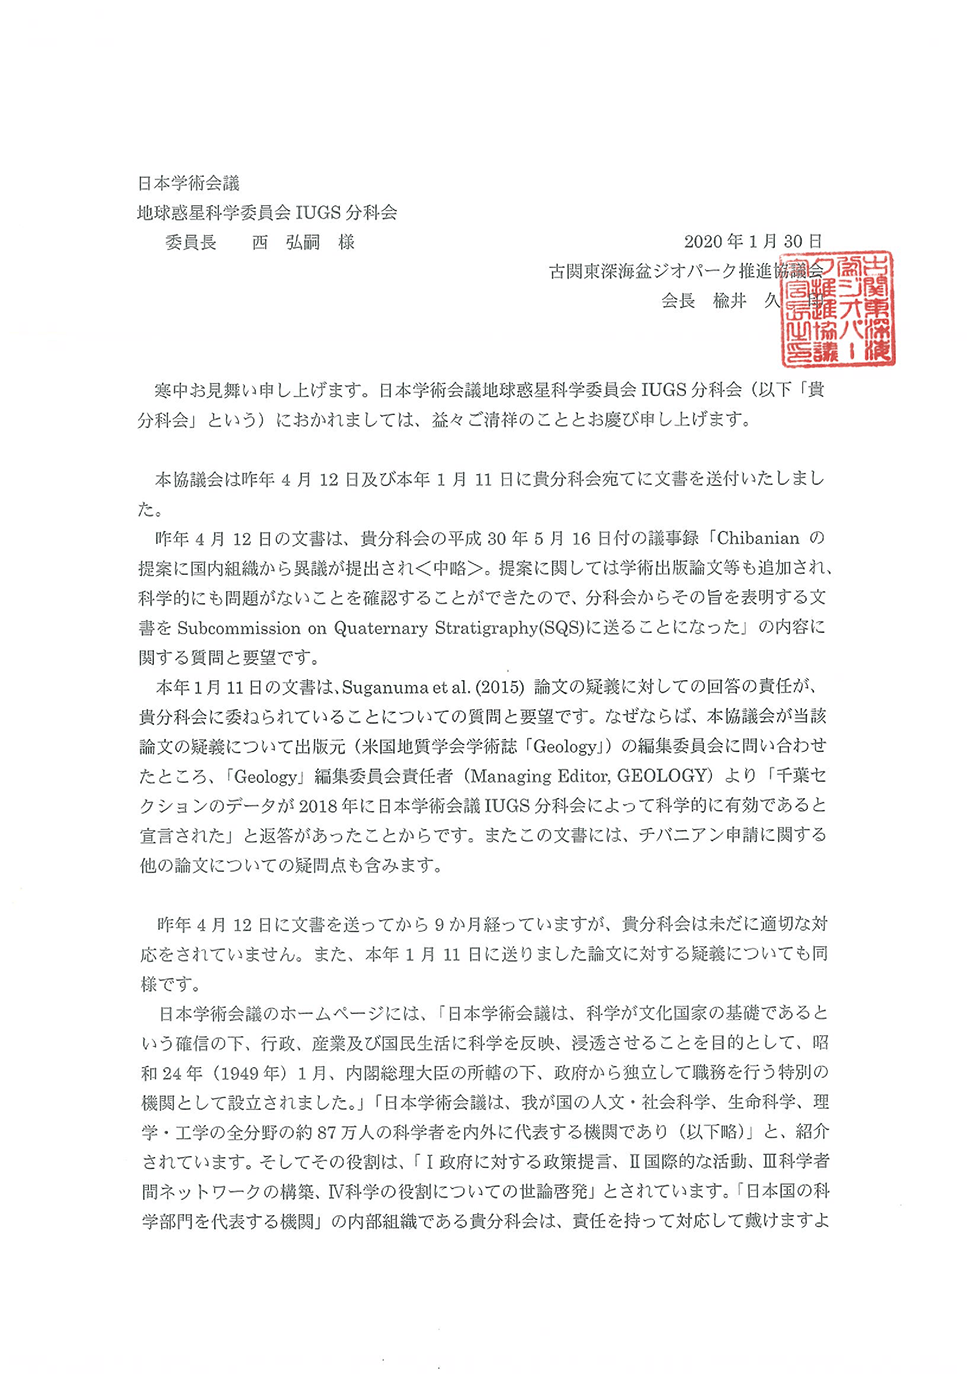 日本学術会議IUGS分科会への「チバニアン」申請に関連した質問と要望について回答のお願い